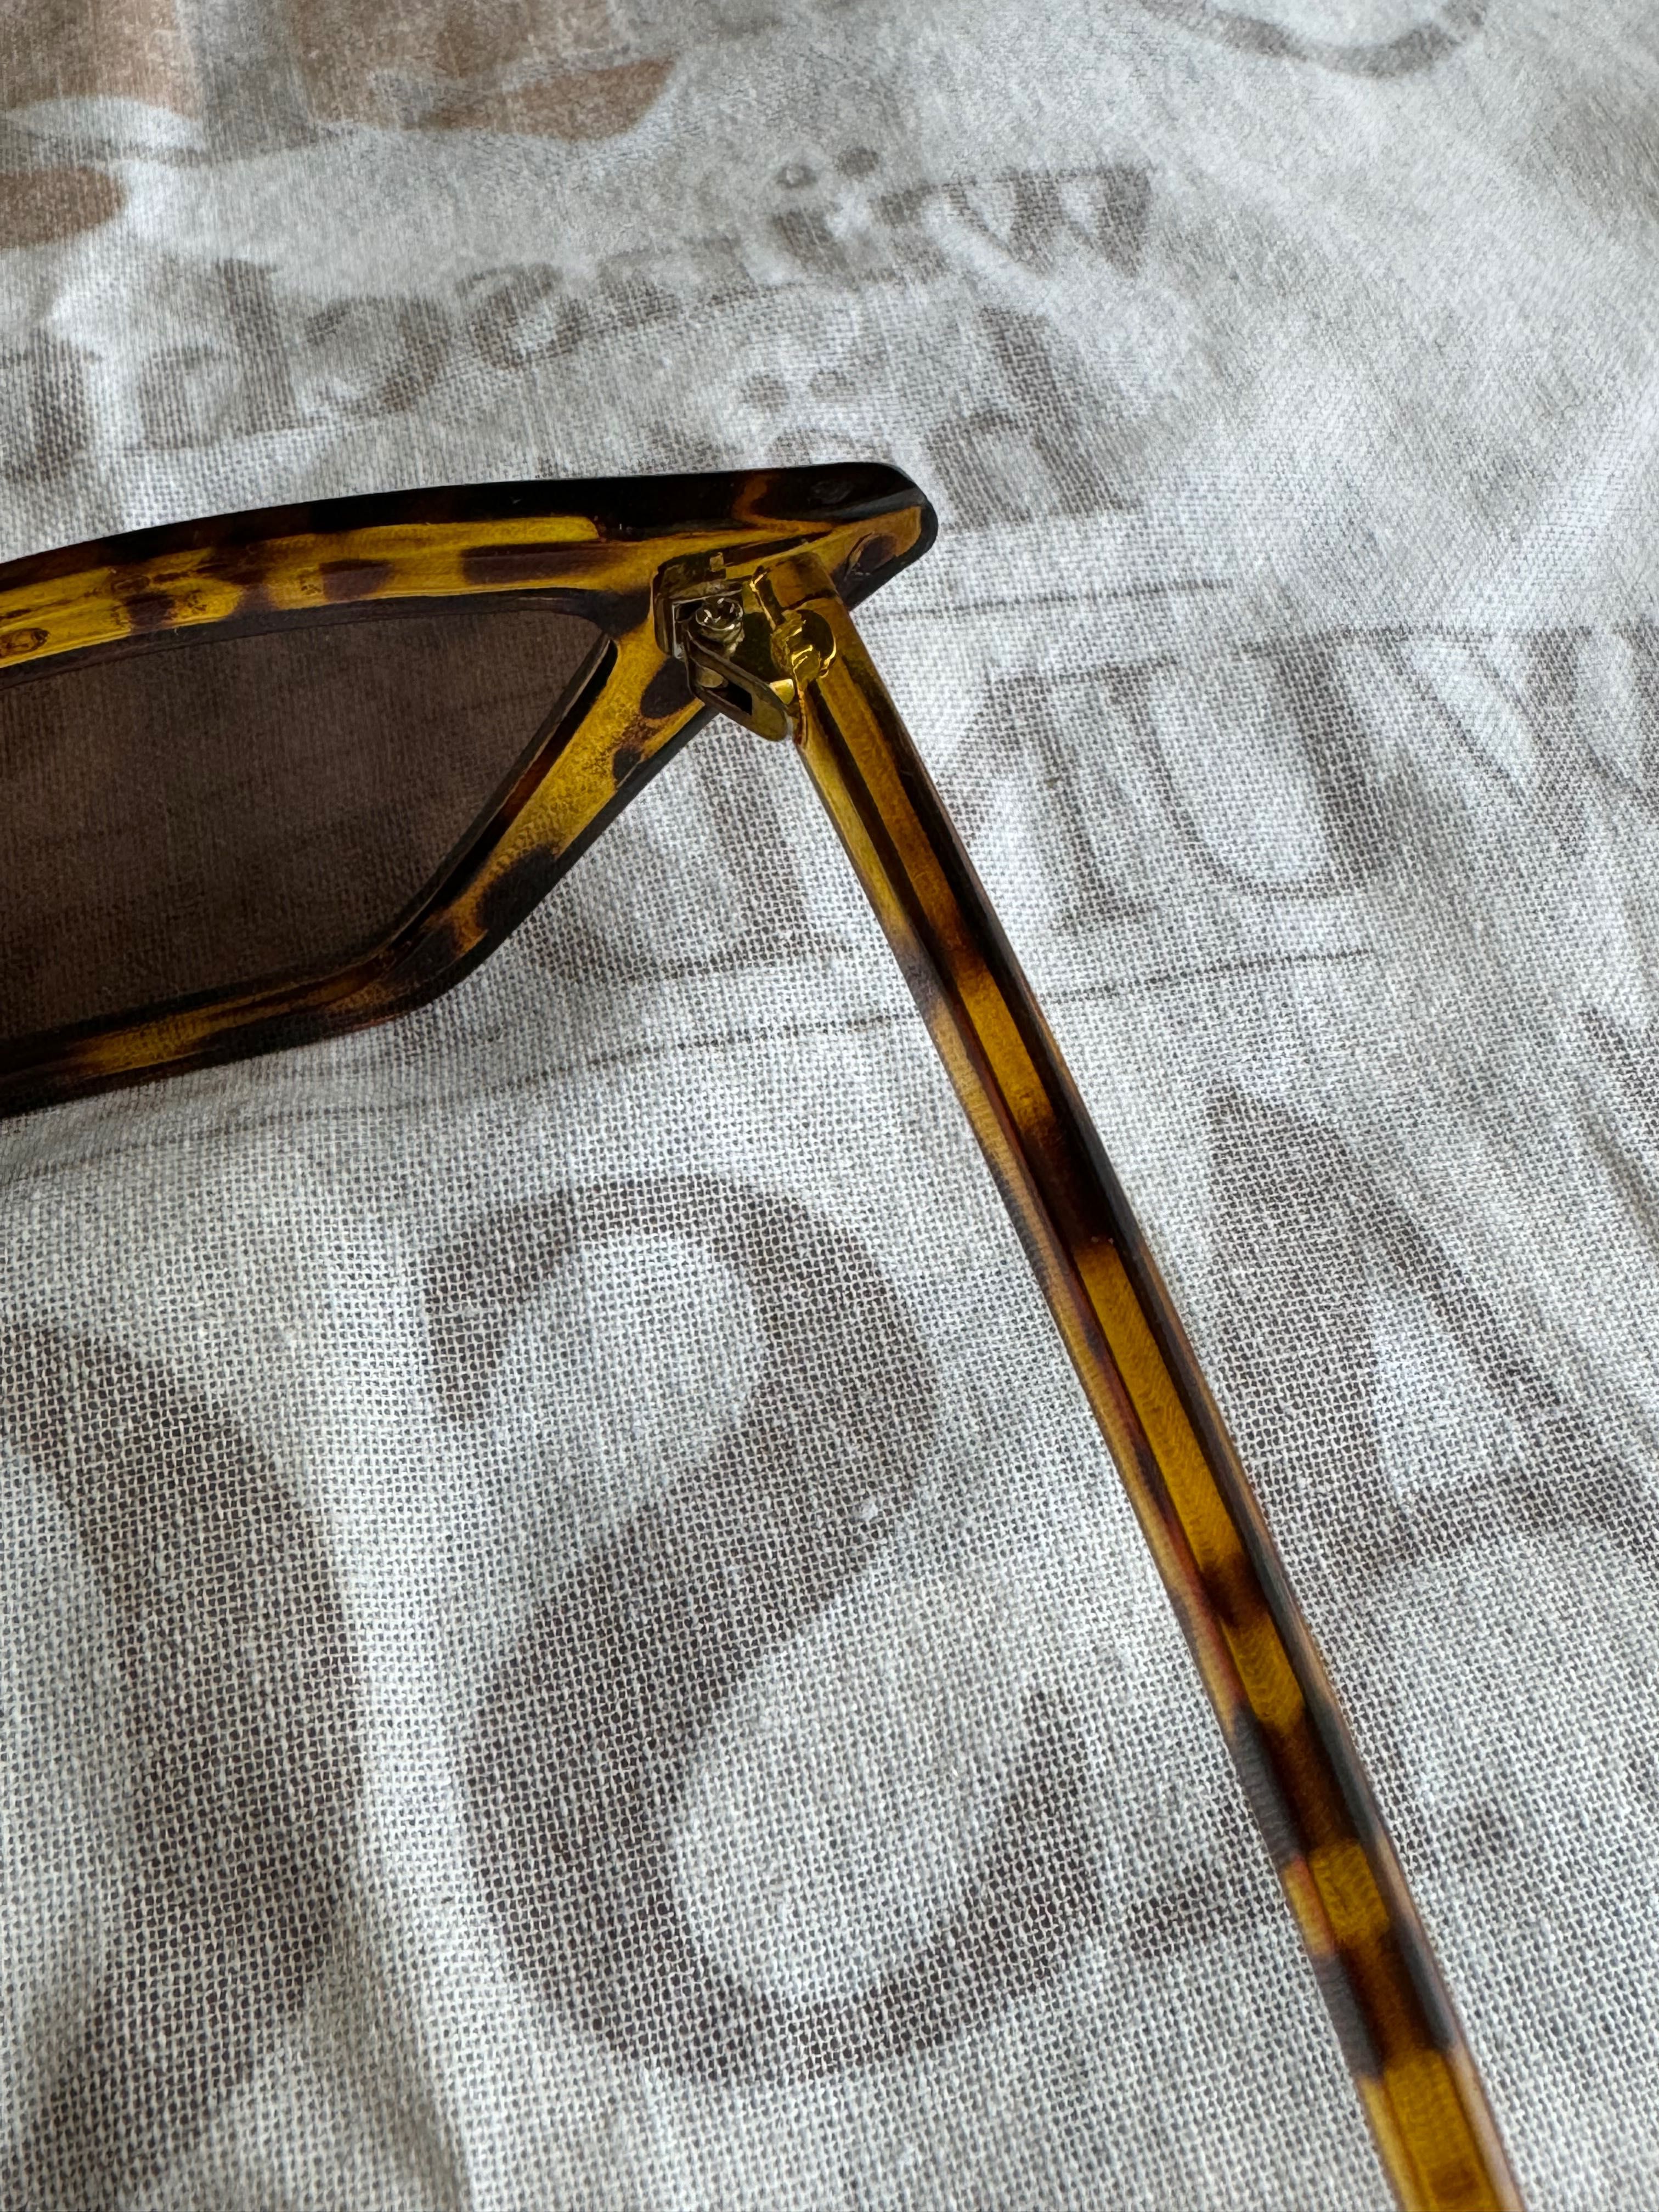 Damskie okulary przeciwsłoneczne w kształcie tygrysa